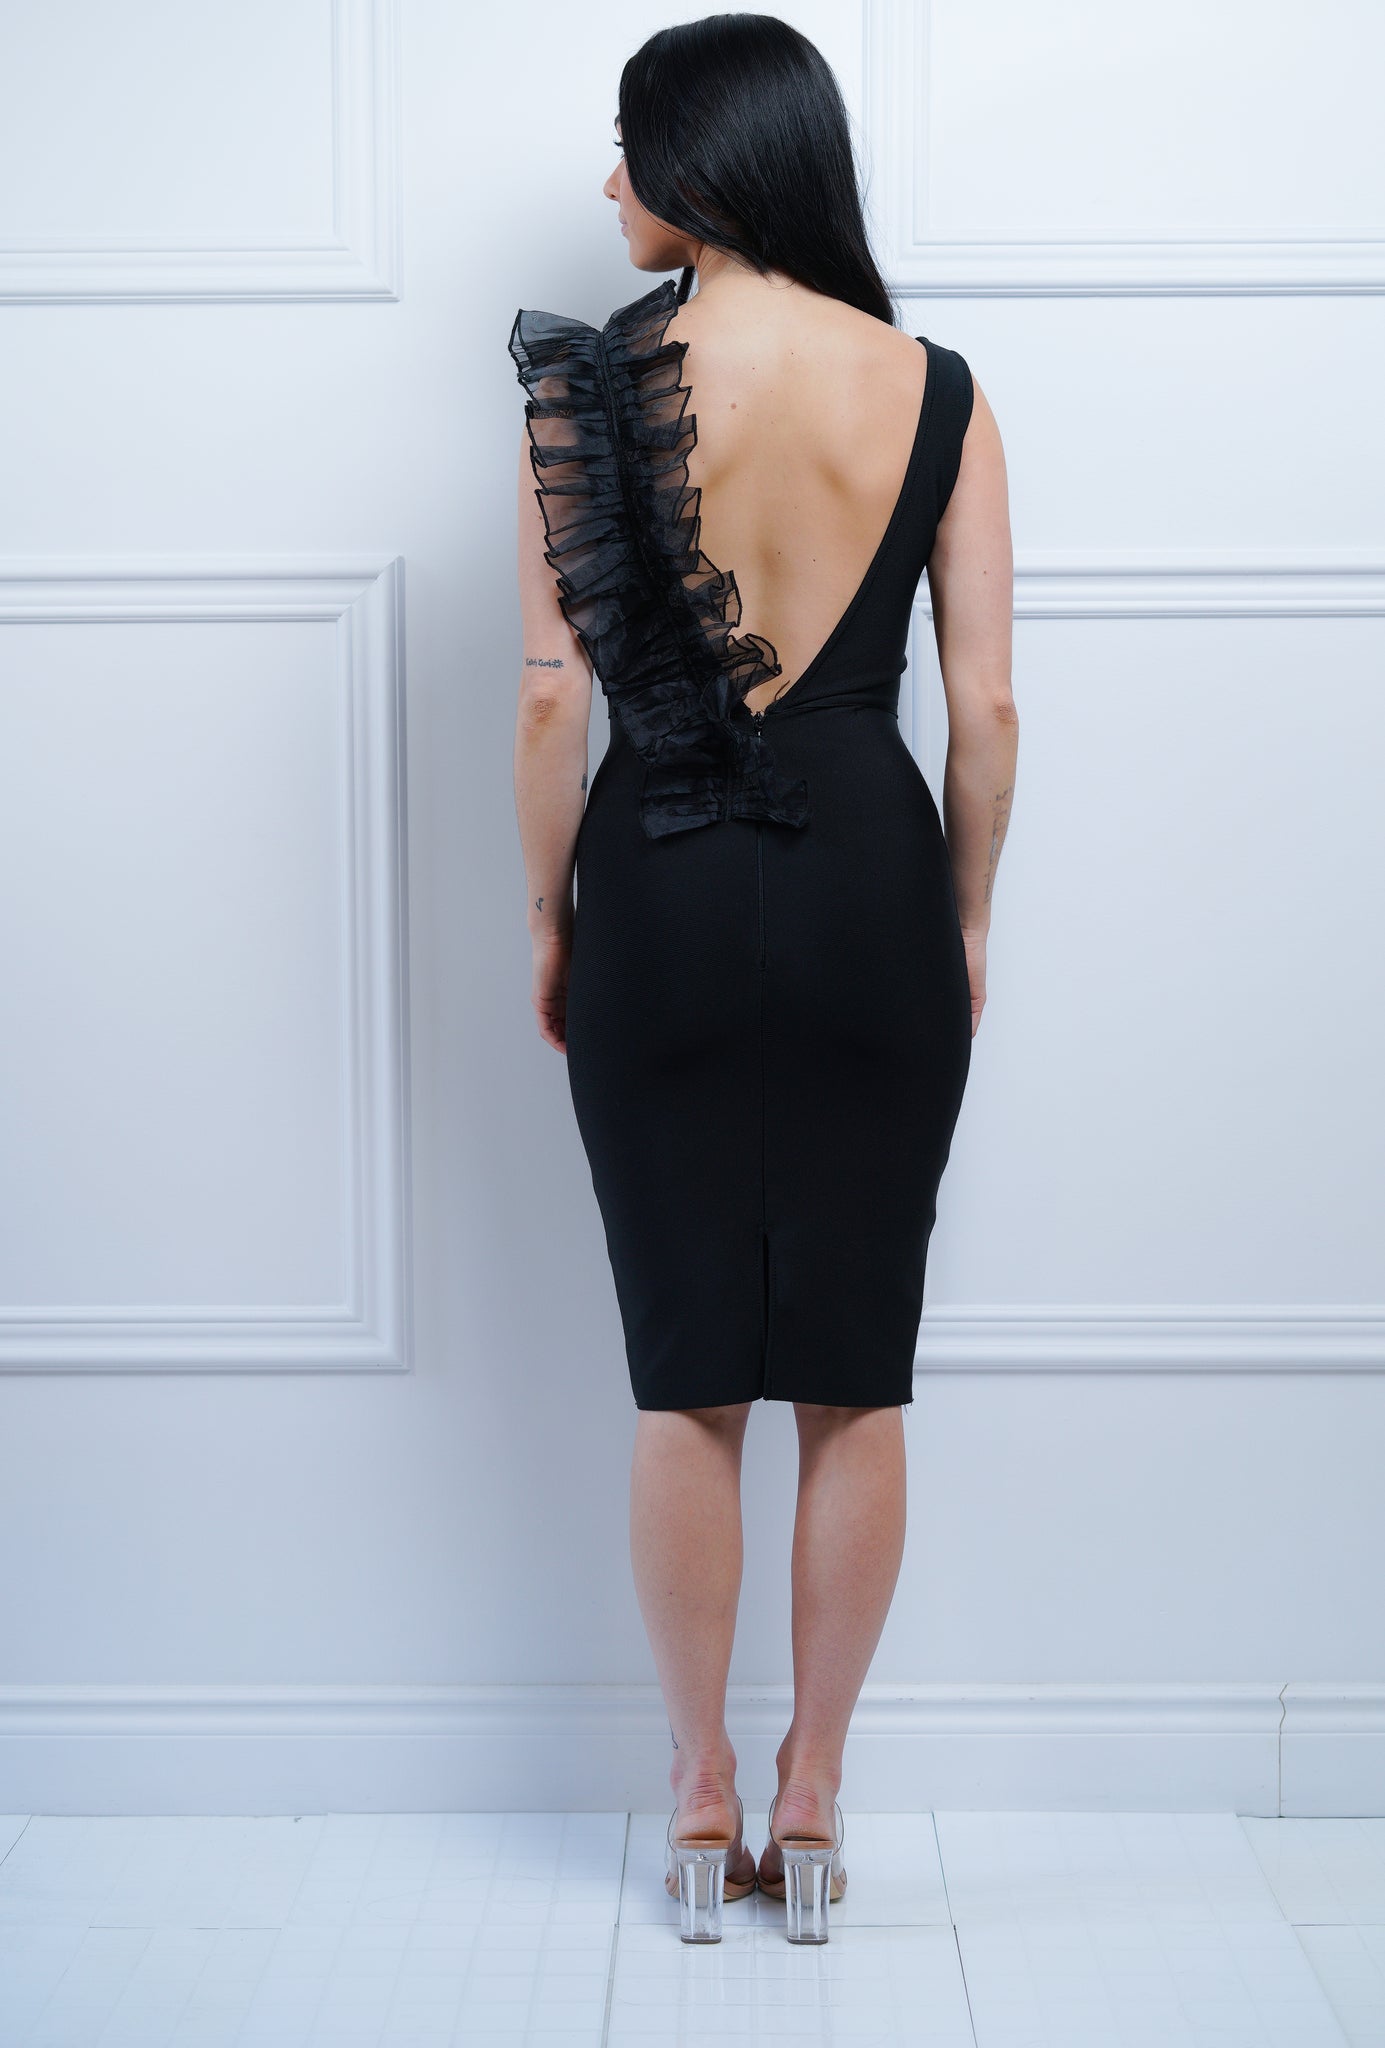 Black Midi Dress - Rental 